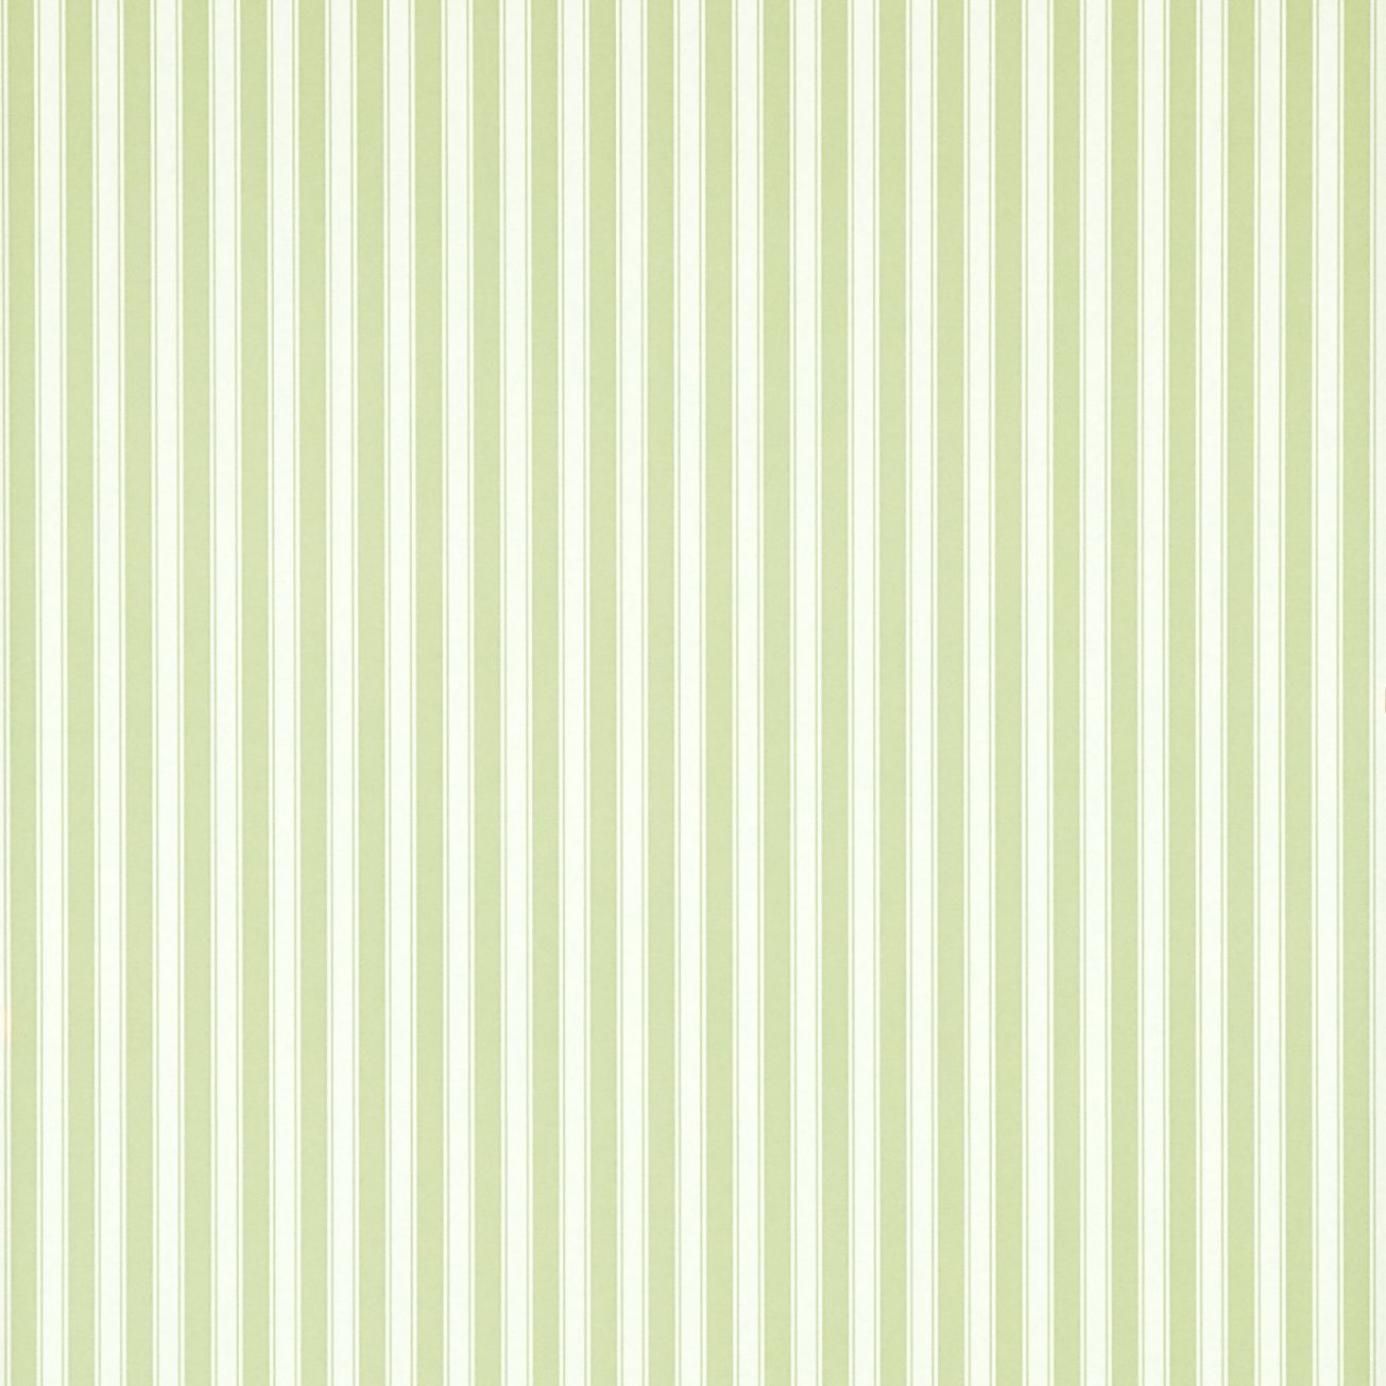 Descargar gratis fondo de pantalla verde a rayas 2015 Grasscloth Wallpaper